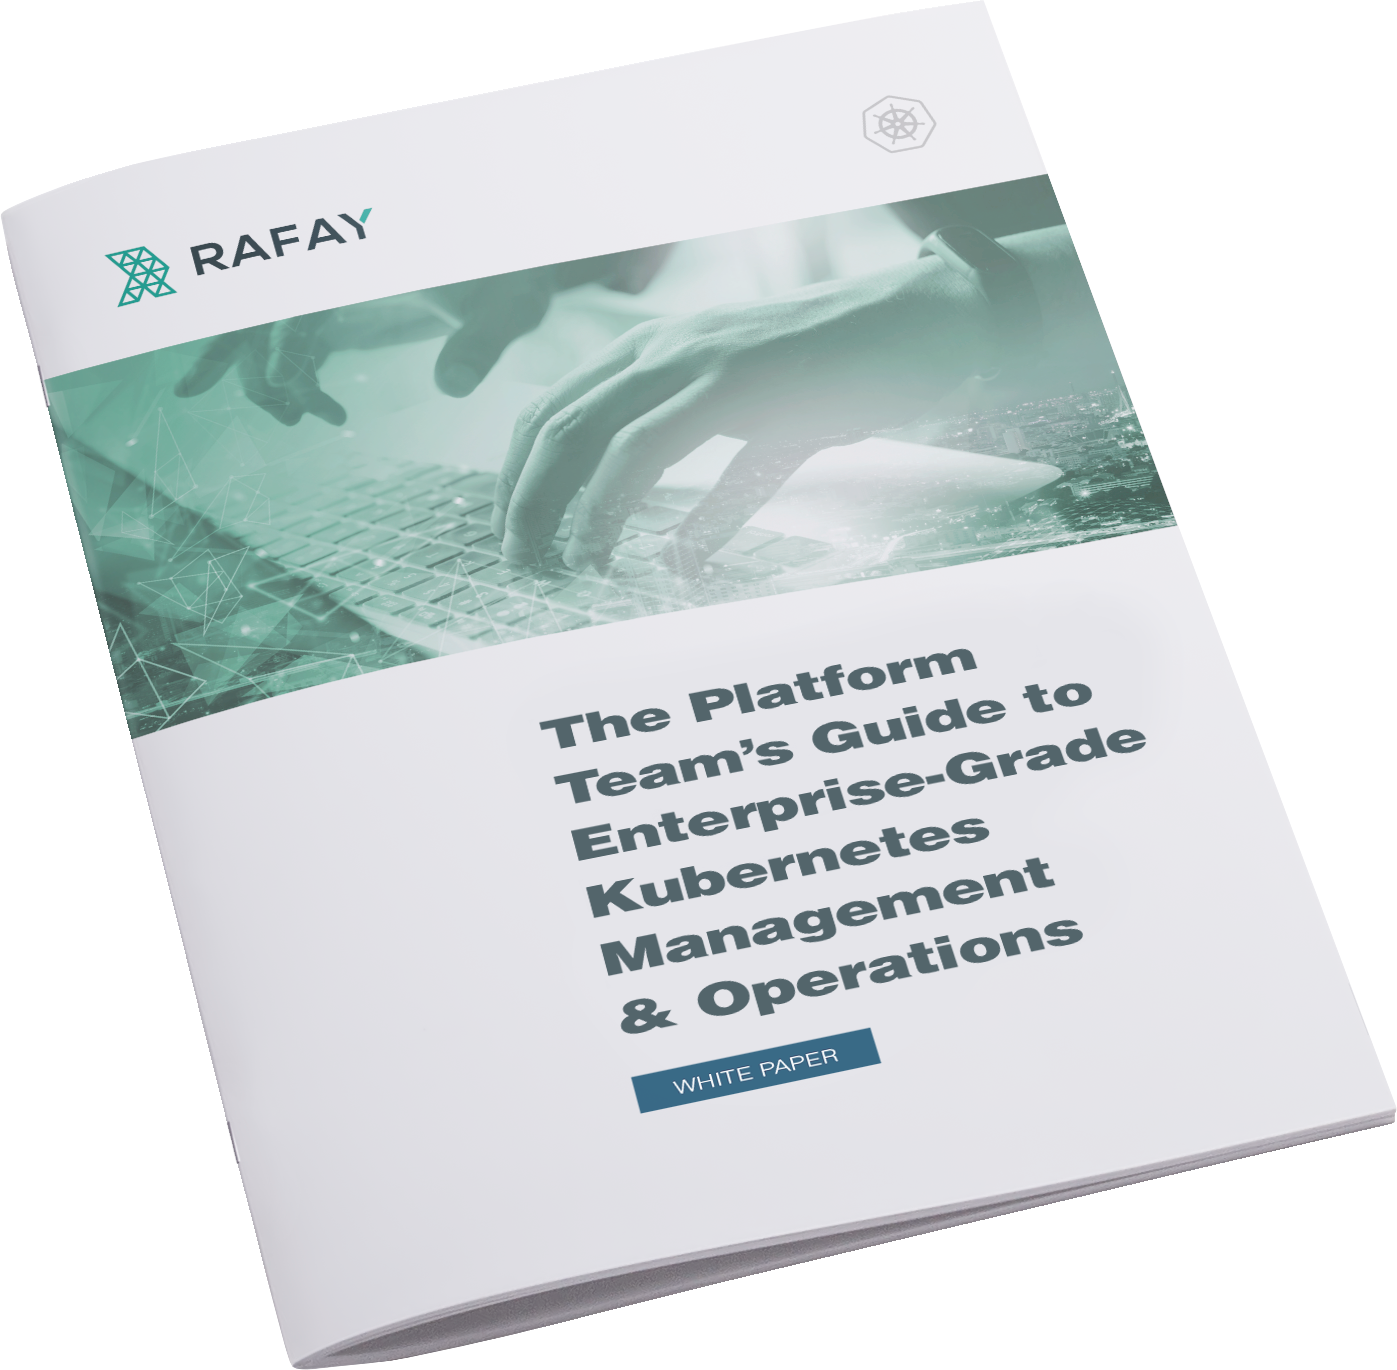 image for Platform Team’s Guide to Enterprise-Grade Kubernetes Management & Operations